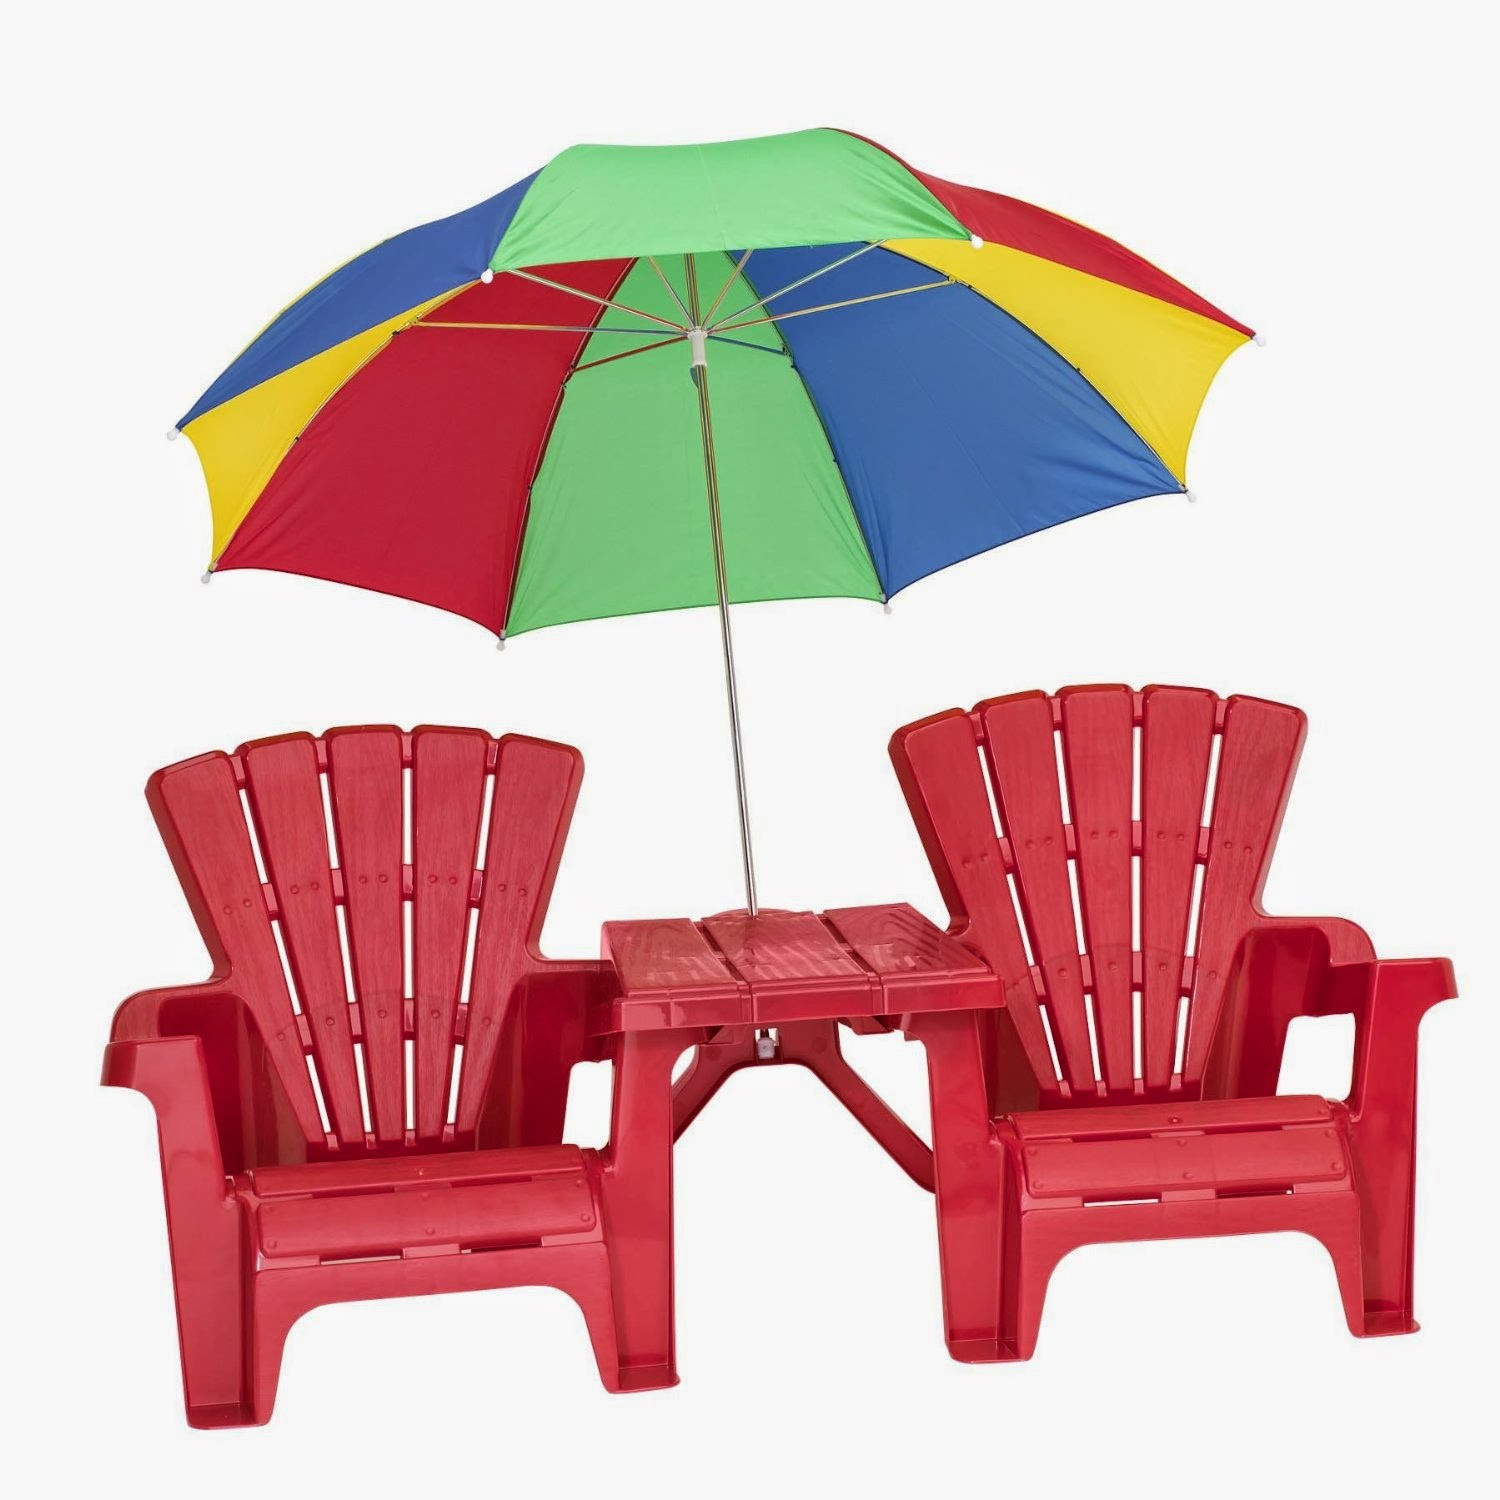 Kids Beach Chair With Umbrella
 cheap beach chairs kids beach chairs